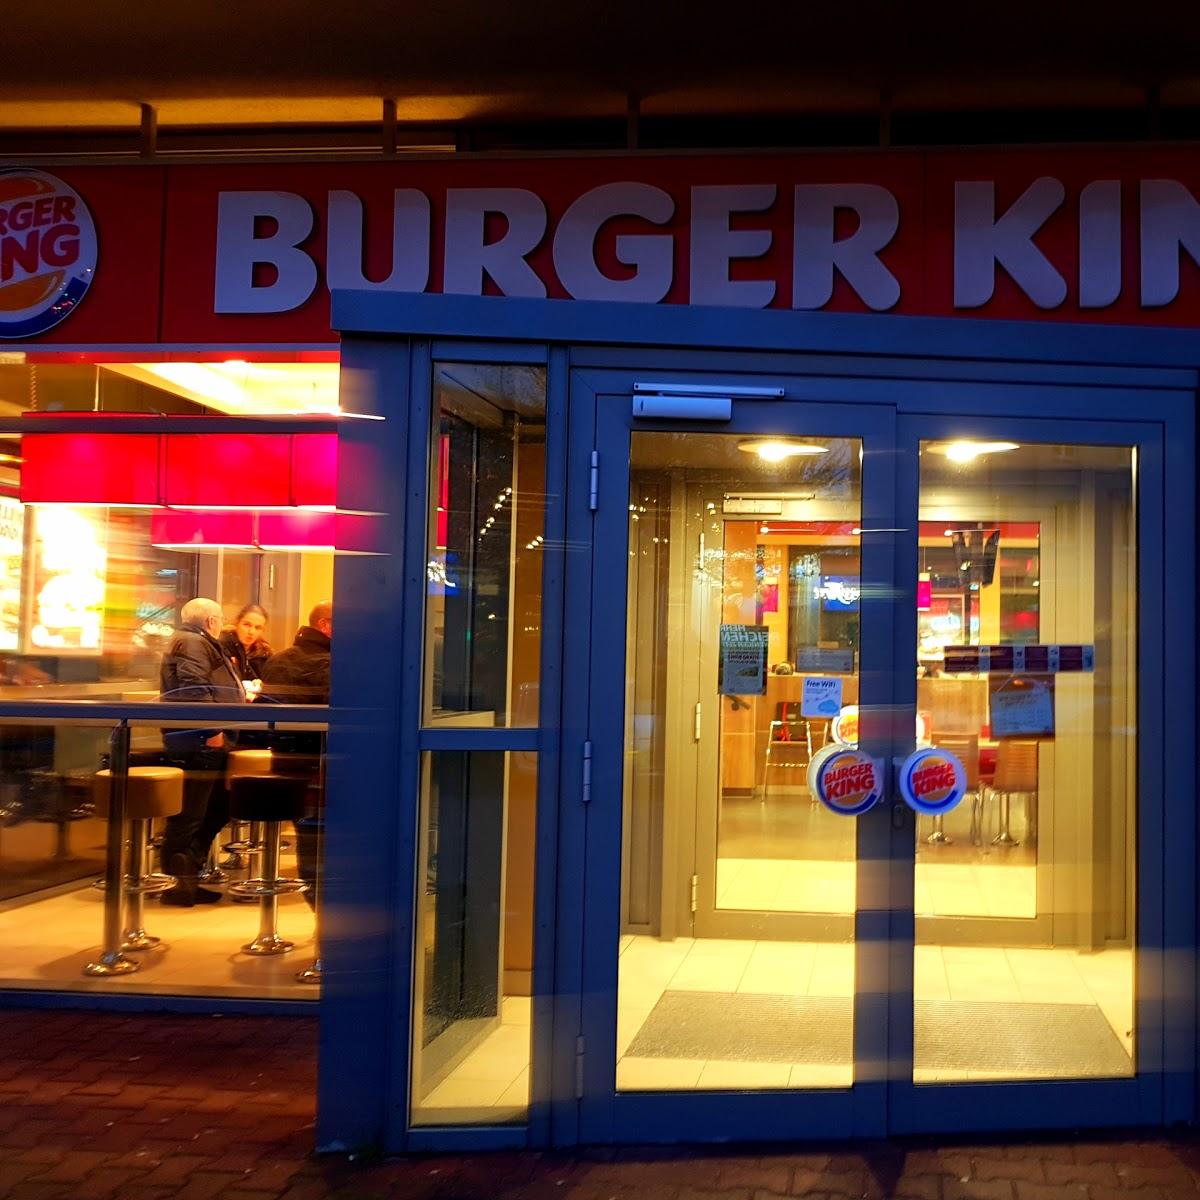 Restaurant "Burger King" in Kaiserslautern